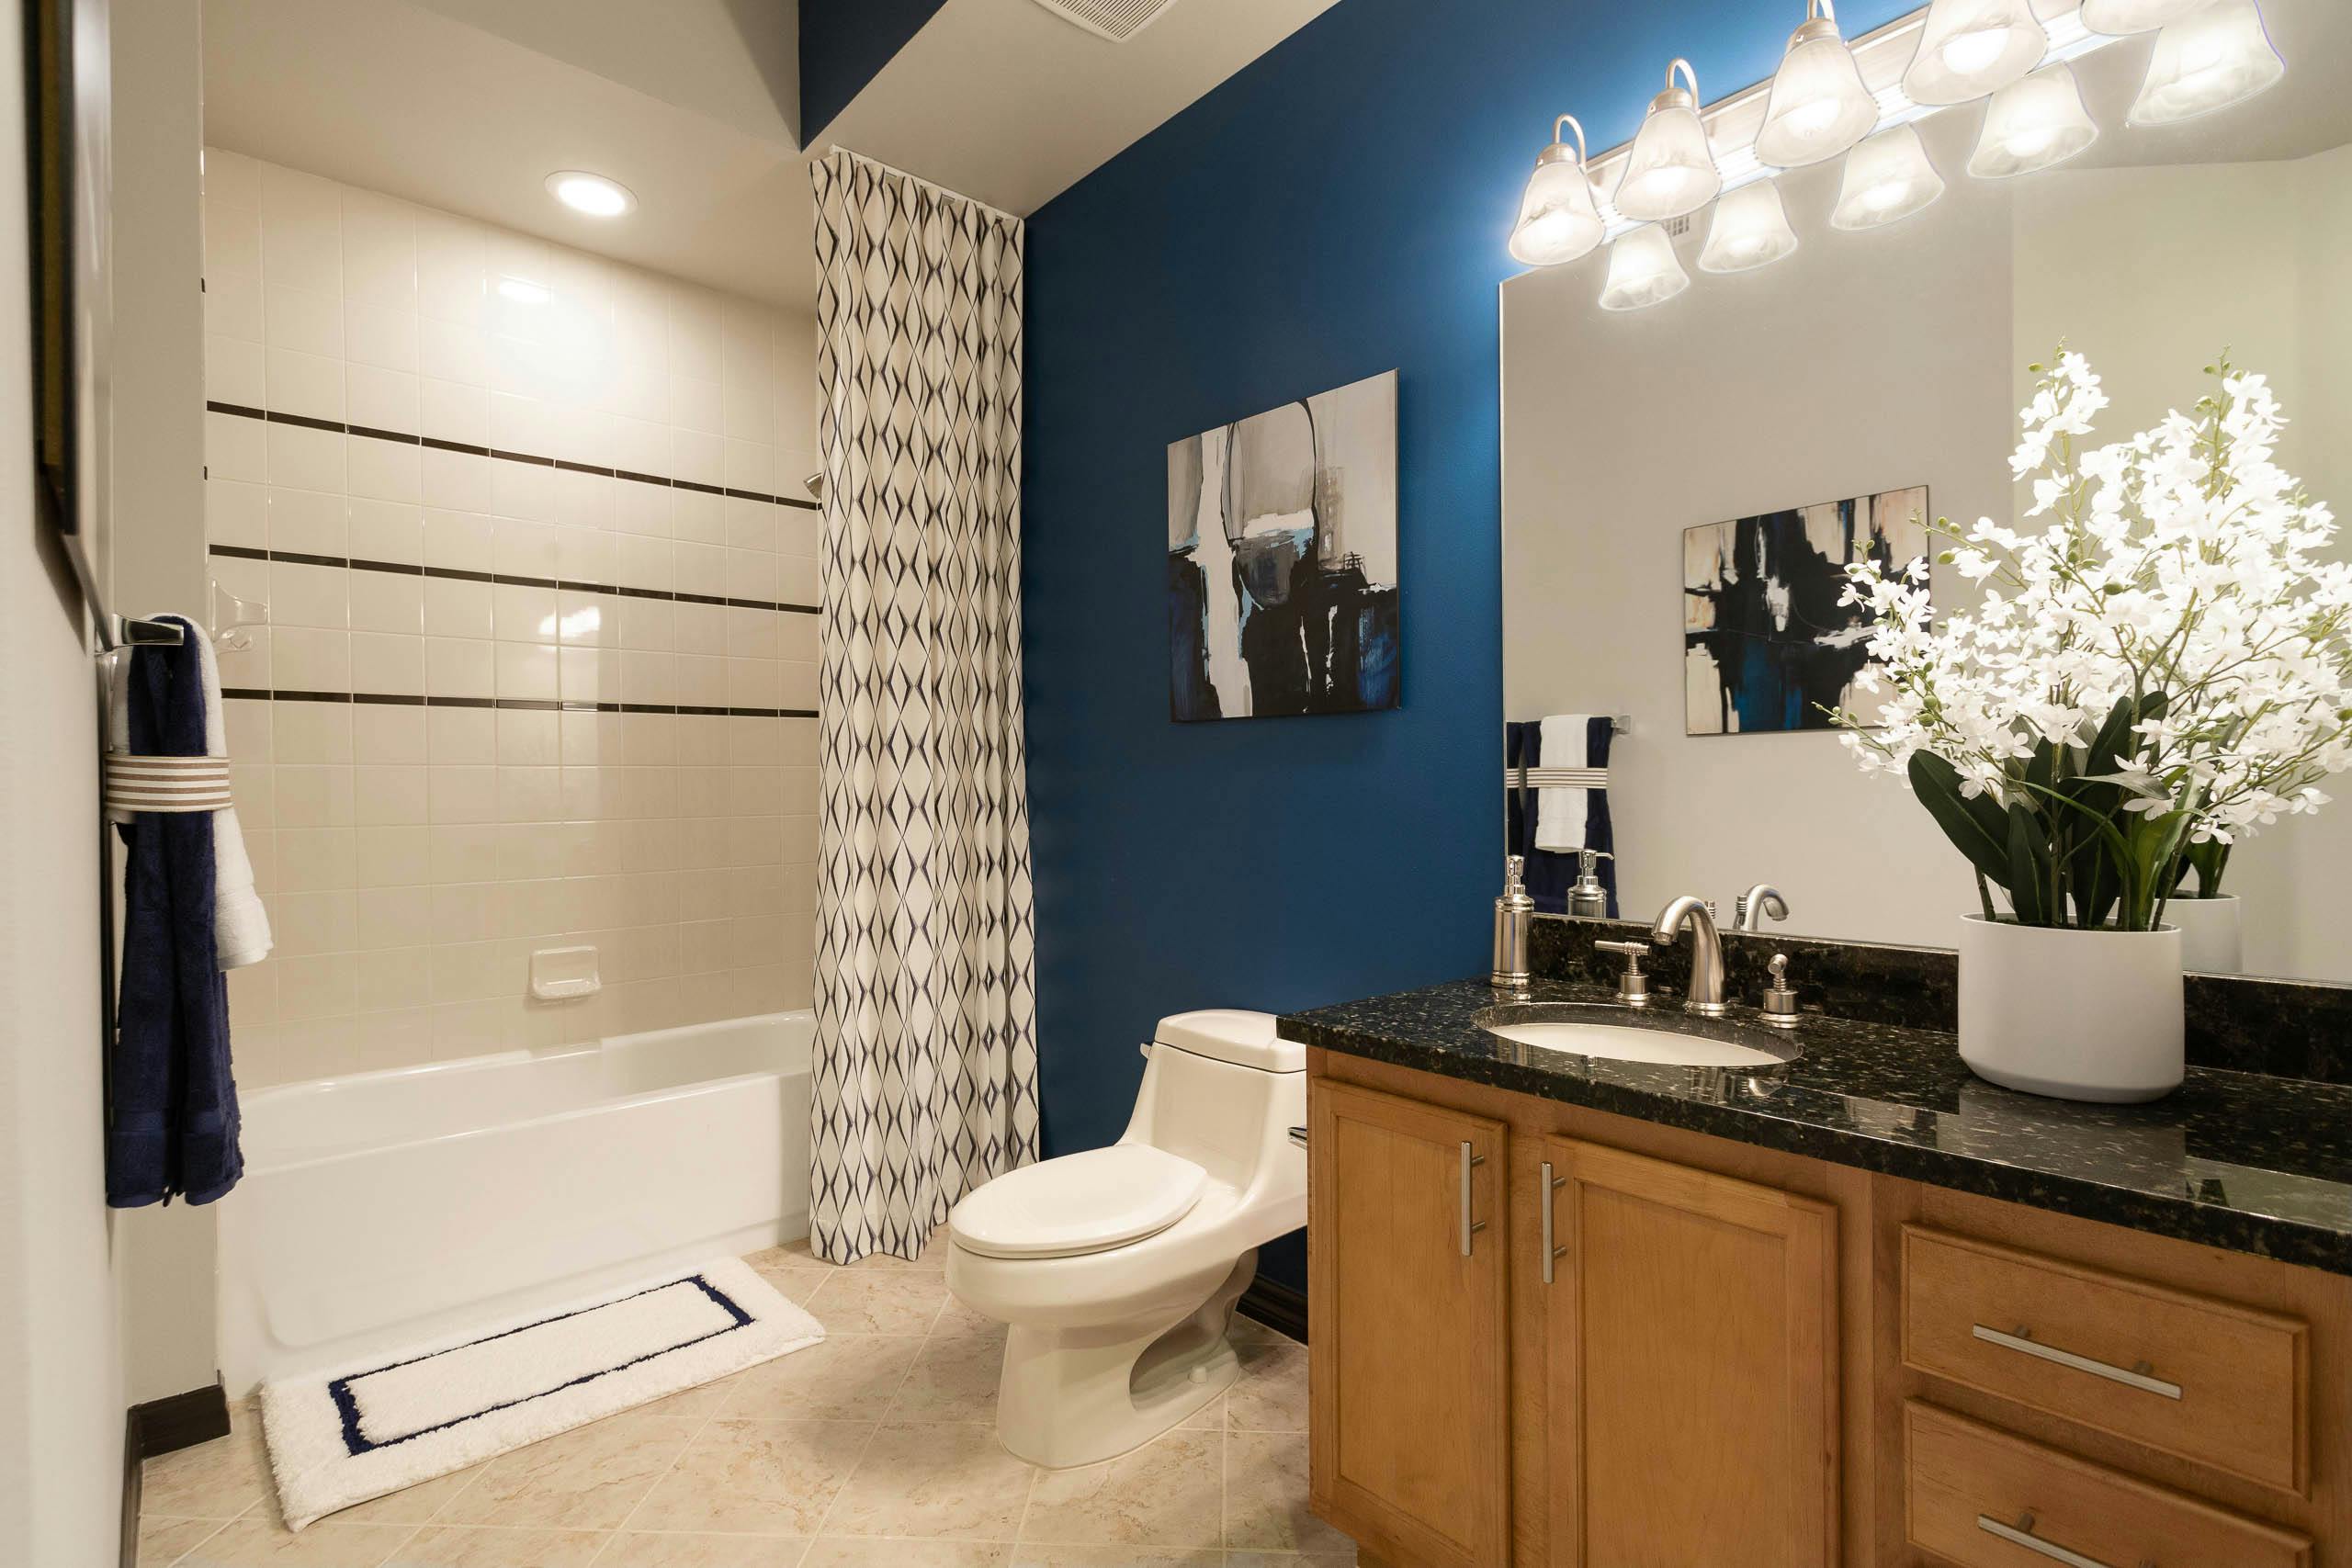 Rental Bathroom Decor Ideas Amli Residential